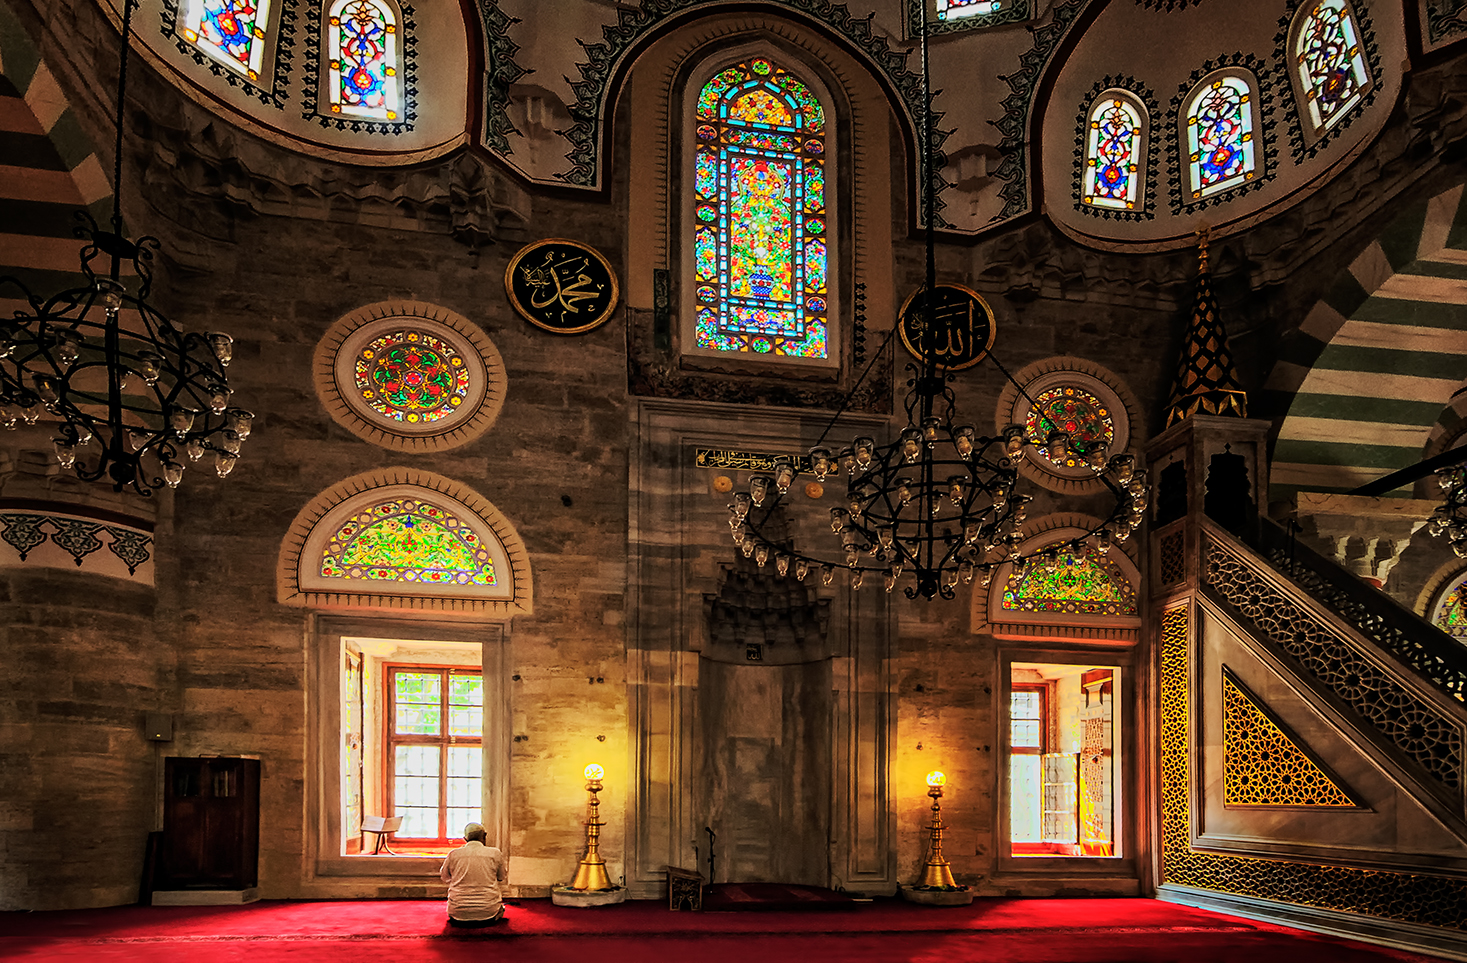 Una preghiera in moschea di CarloBassi